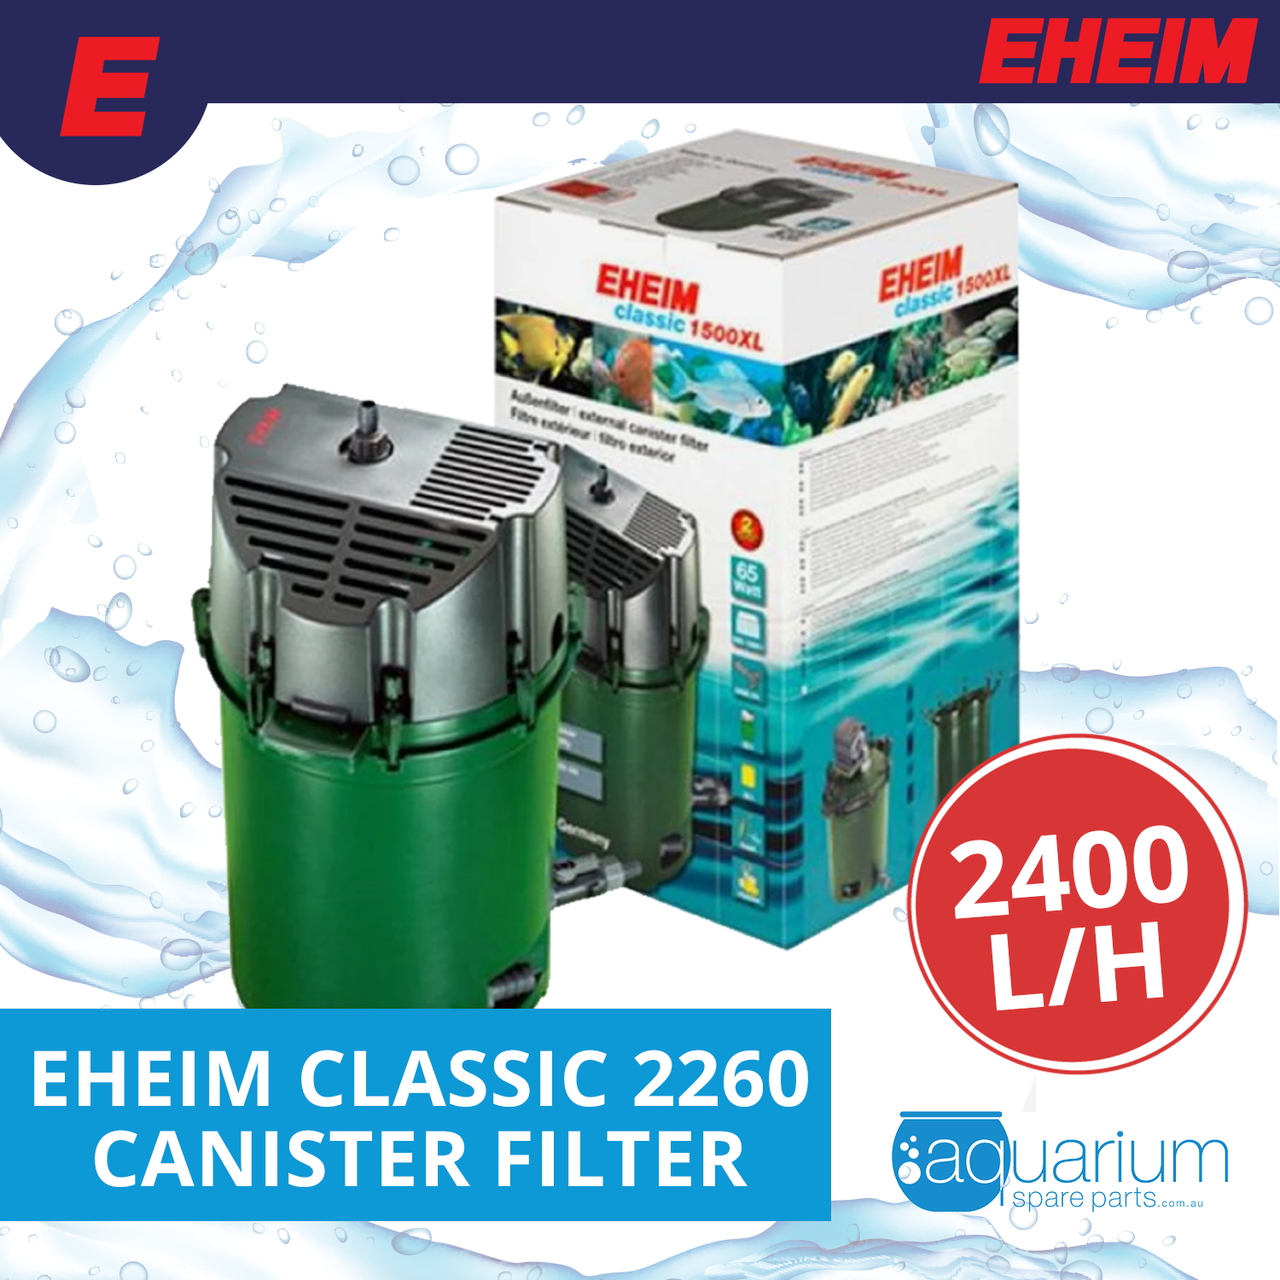 Eheim Classic 2260 2400L/H External Canister Filter 1500XL